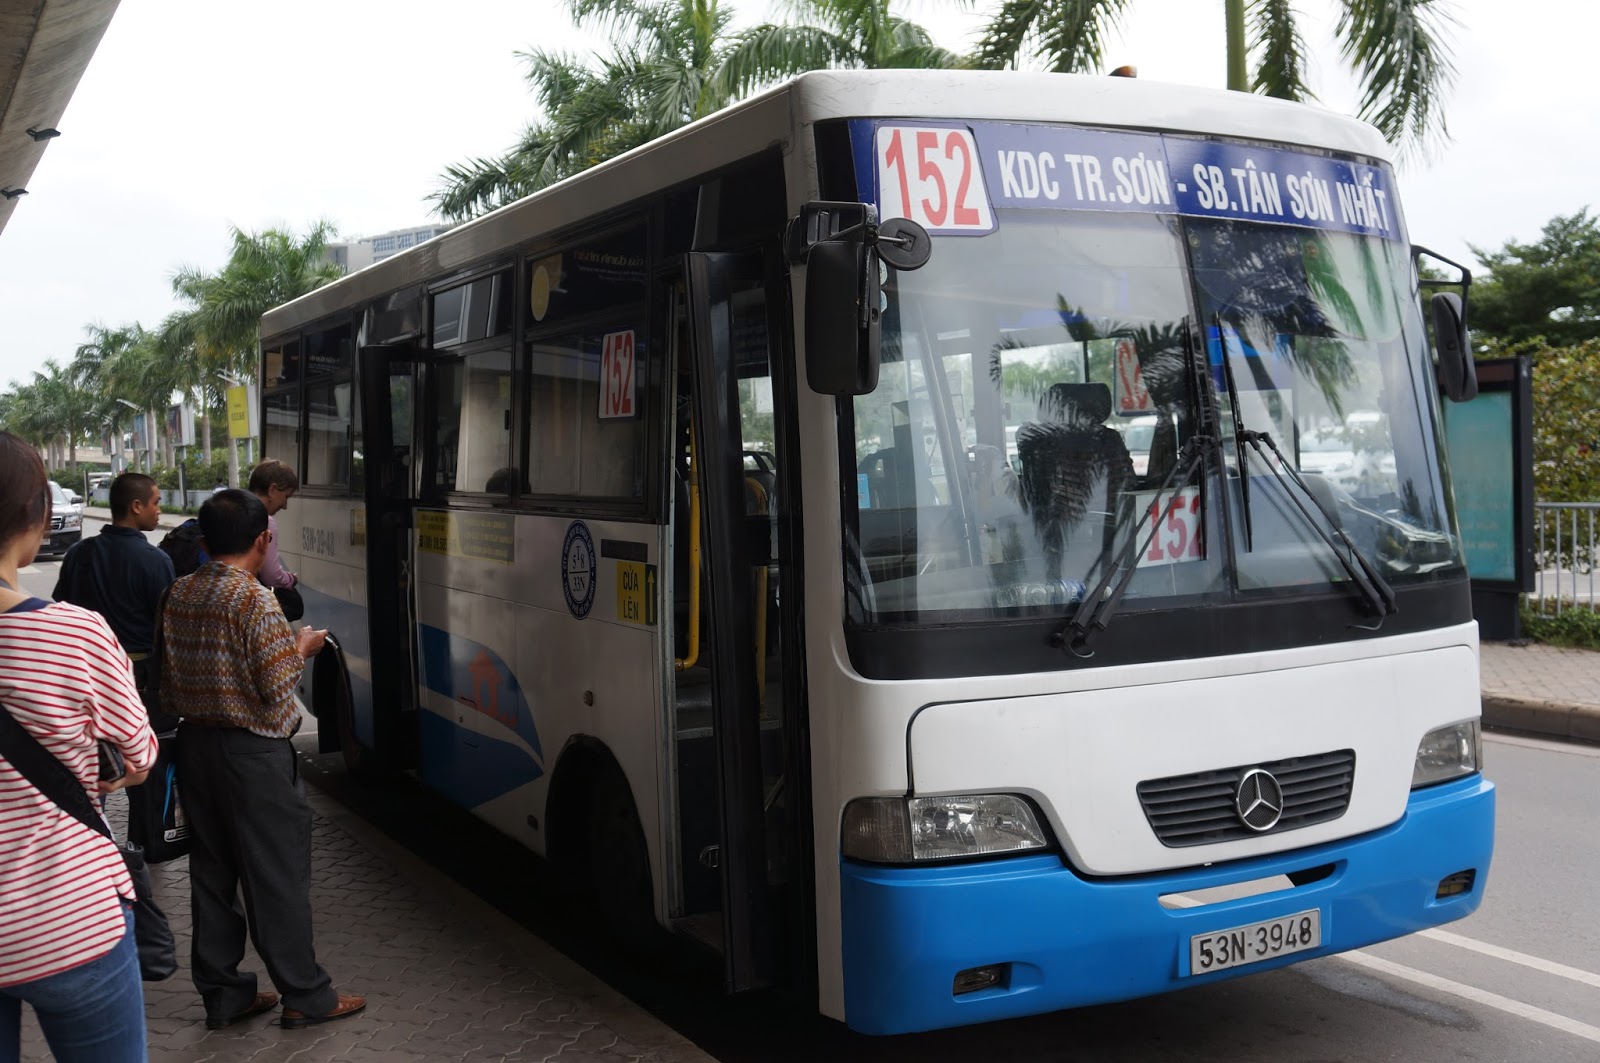 Taking bus number 152 to Ben Thanh